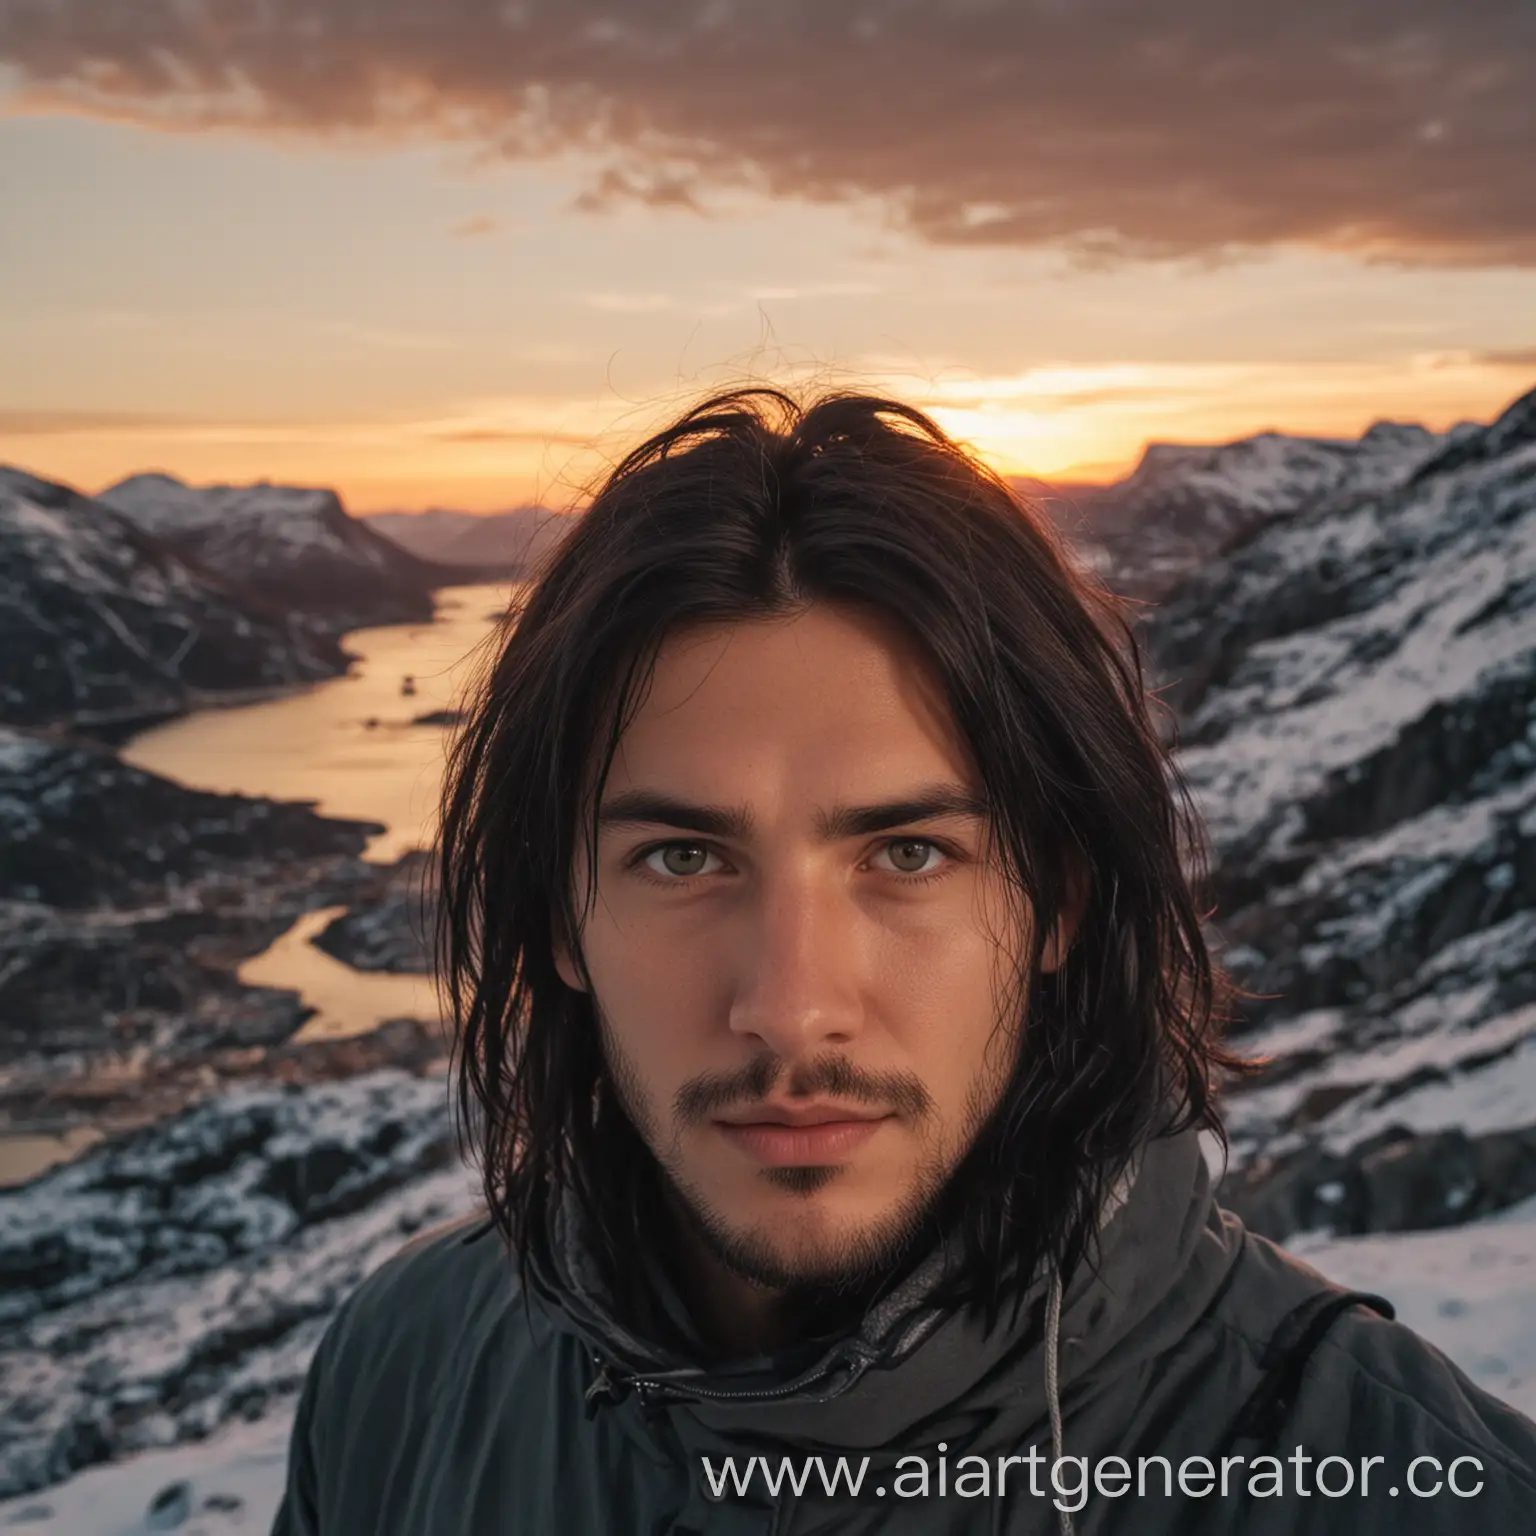 парень с длинными черными волосами смотрит в камеру фооаппарата и  смотрит в закат у склона горы в норвегии